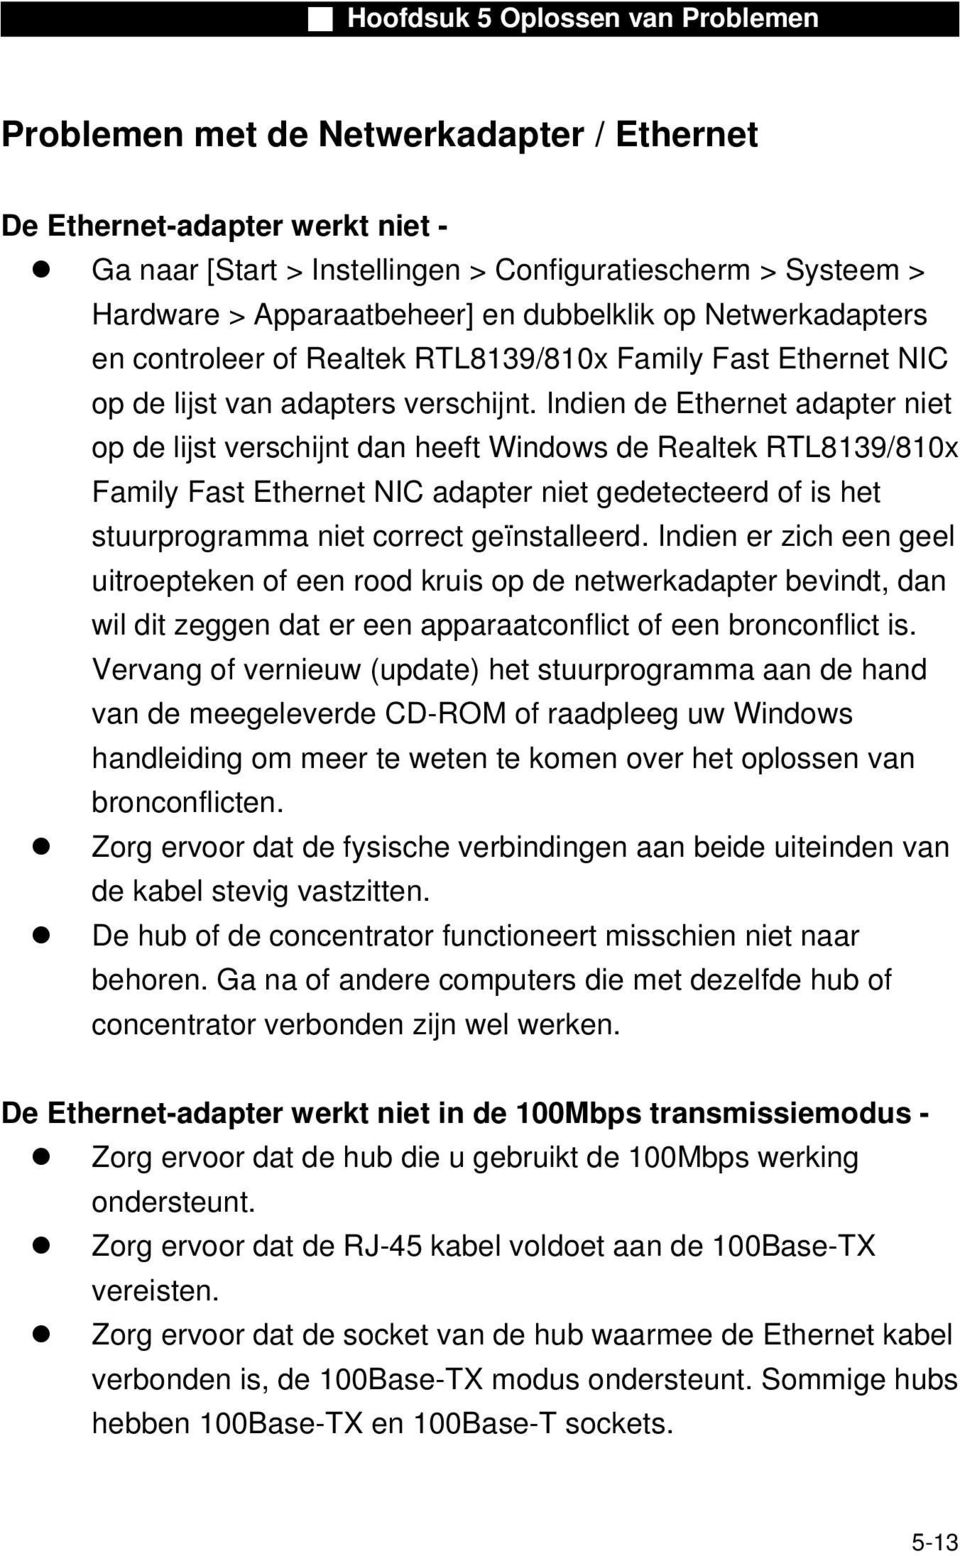 Indien de Ethernet adapter niet op de lijst verschijnt dan heeft Windows de Realtek RTL8139/810x Family Fast Ethernet NIC adapter niet gedetecteerd of is het stuurprogramma niet correct geïnstalleerd.